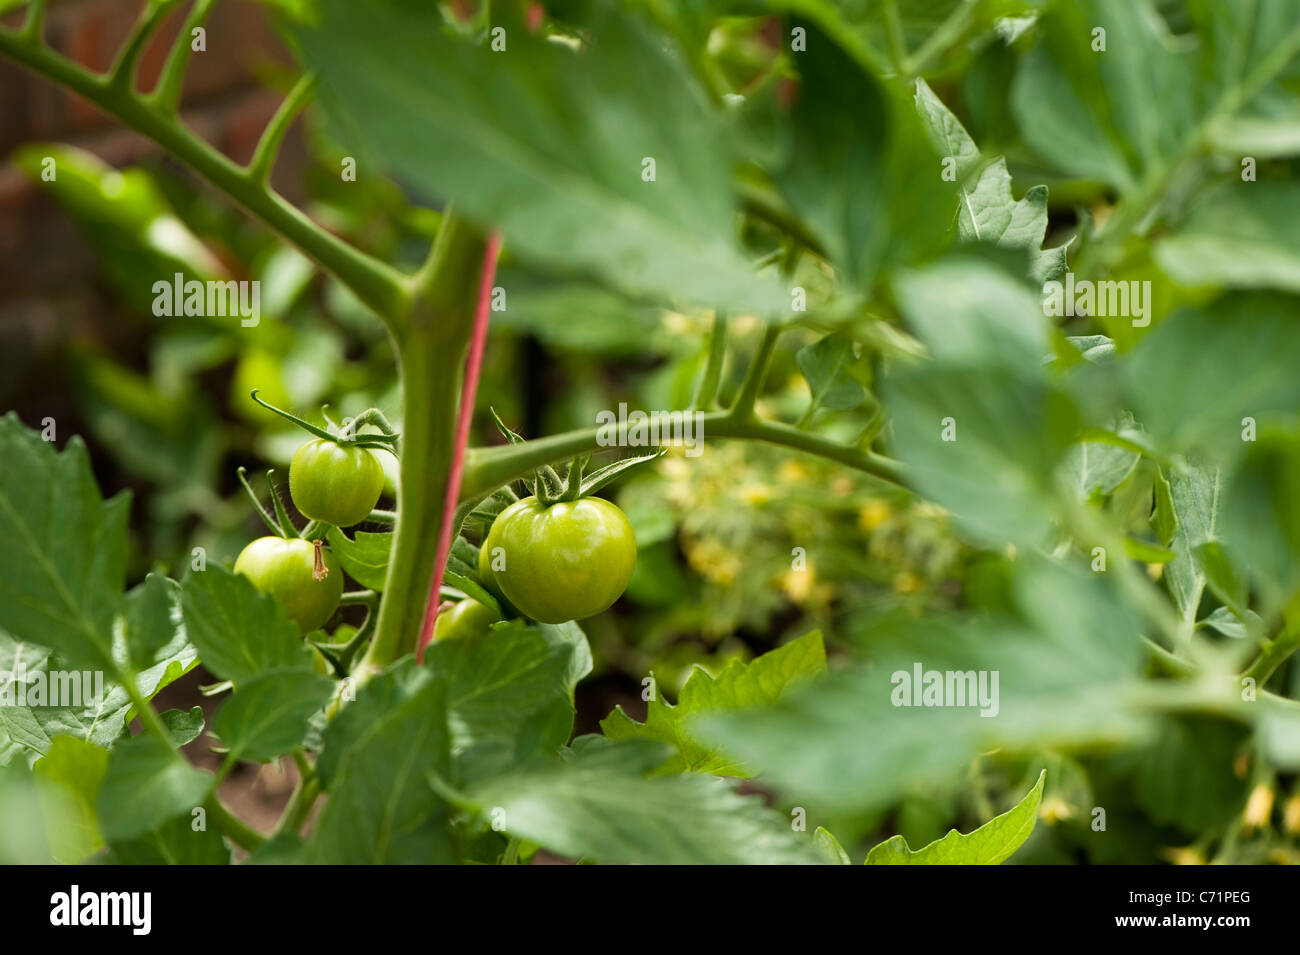 Tomato plant, Solanum lycopersicum 'Shirley' Stock Photo